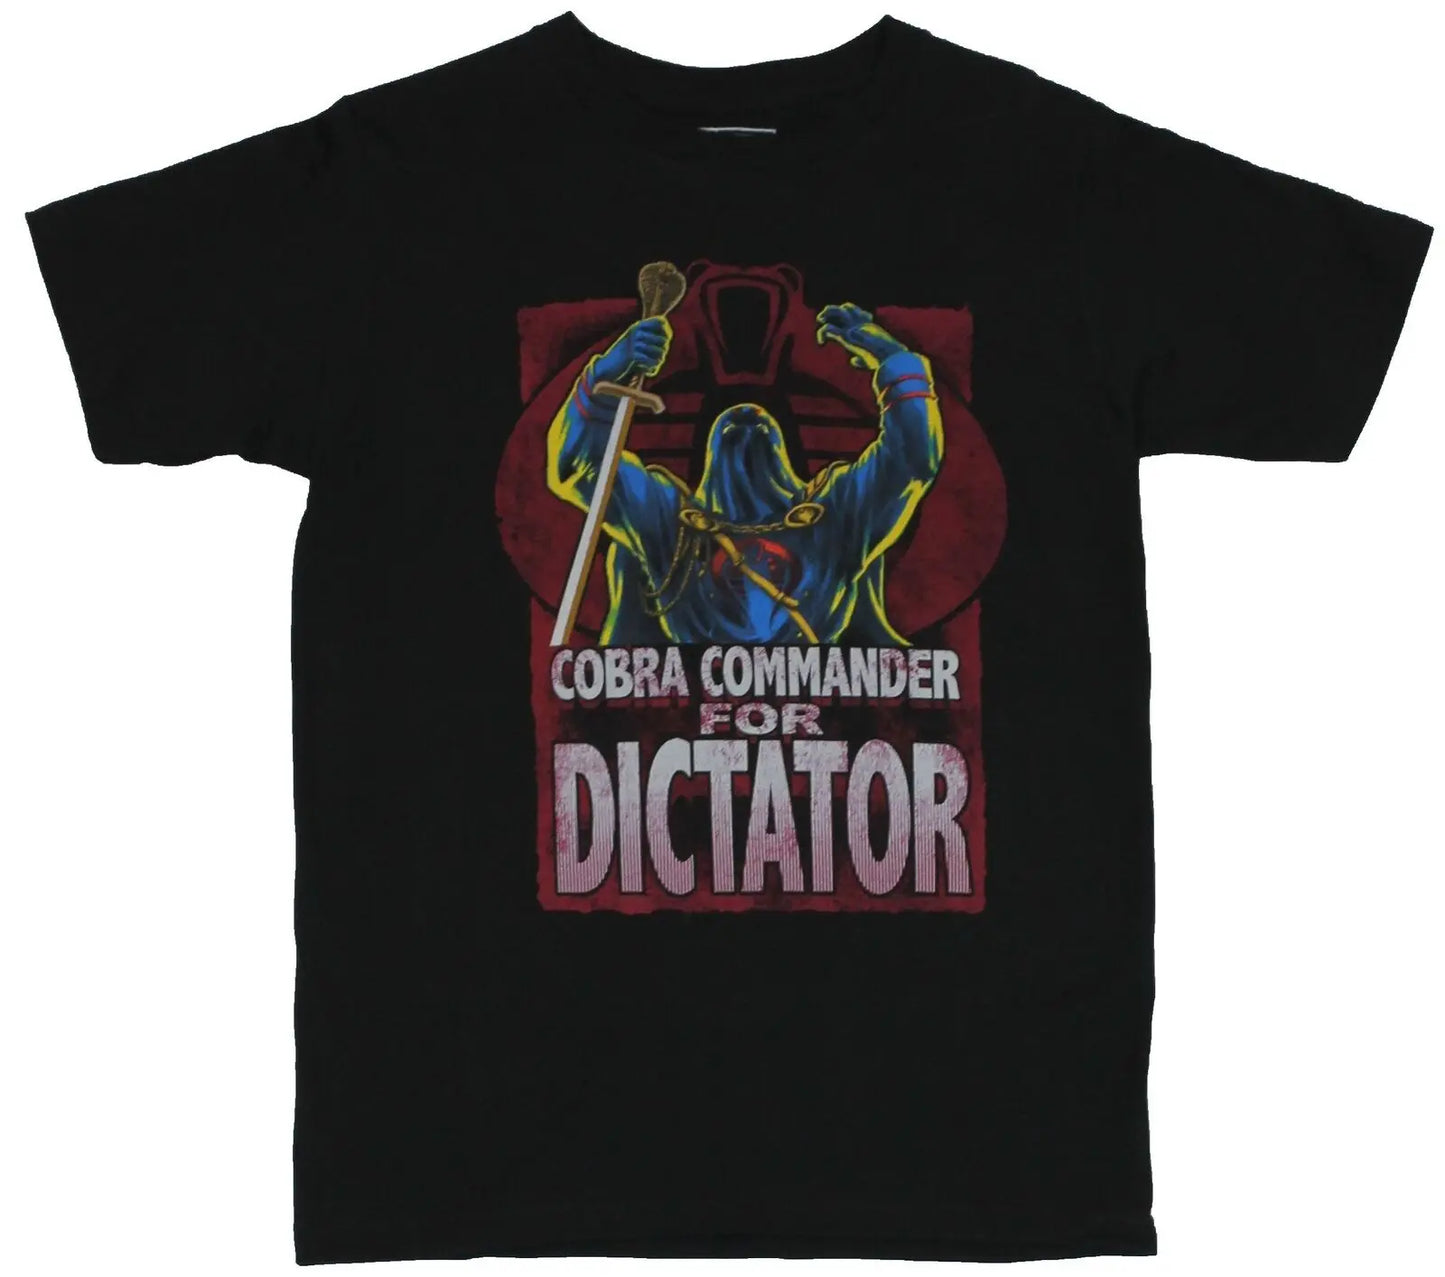 Gi Joe GI – t-shirt pour adulte, nouveau t-shirt Cobra Commander pour photo de dictateur